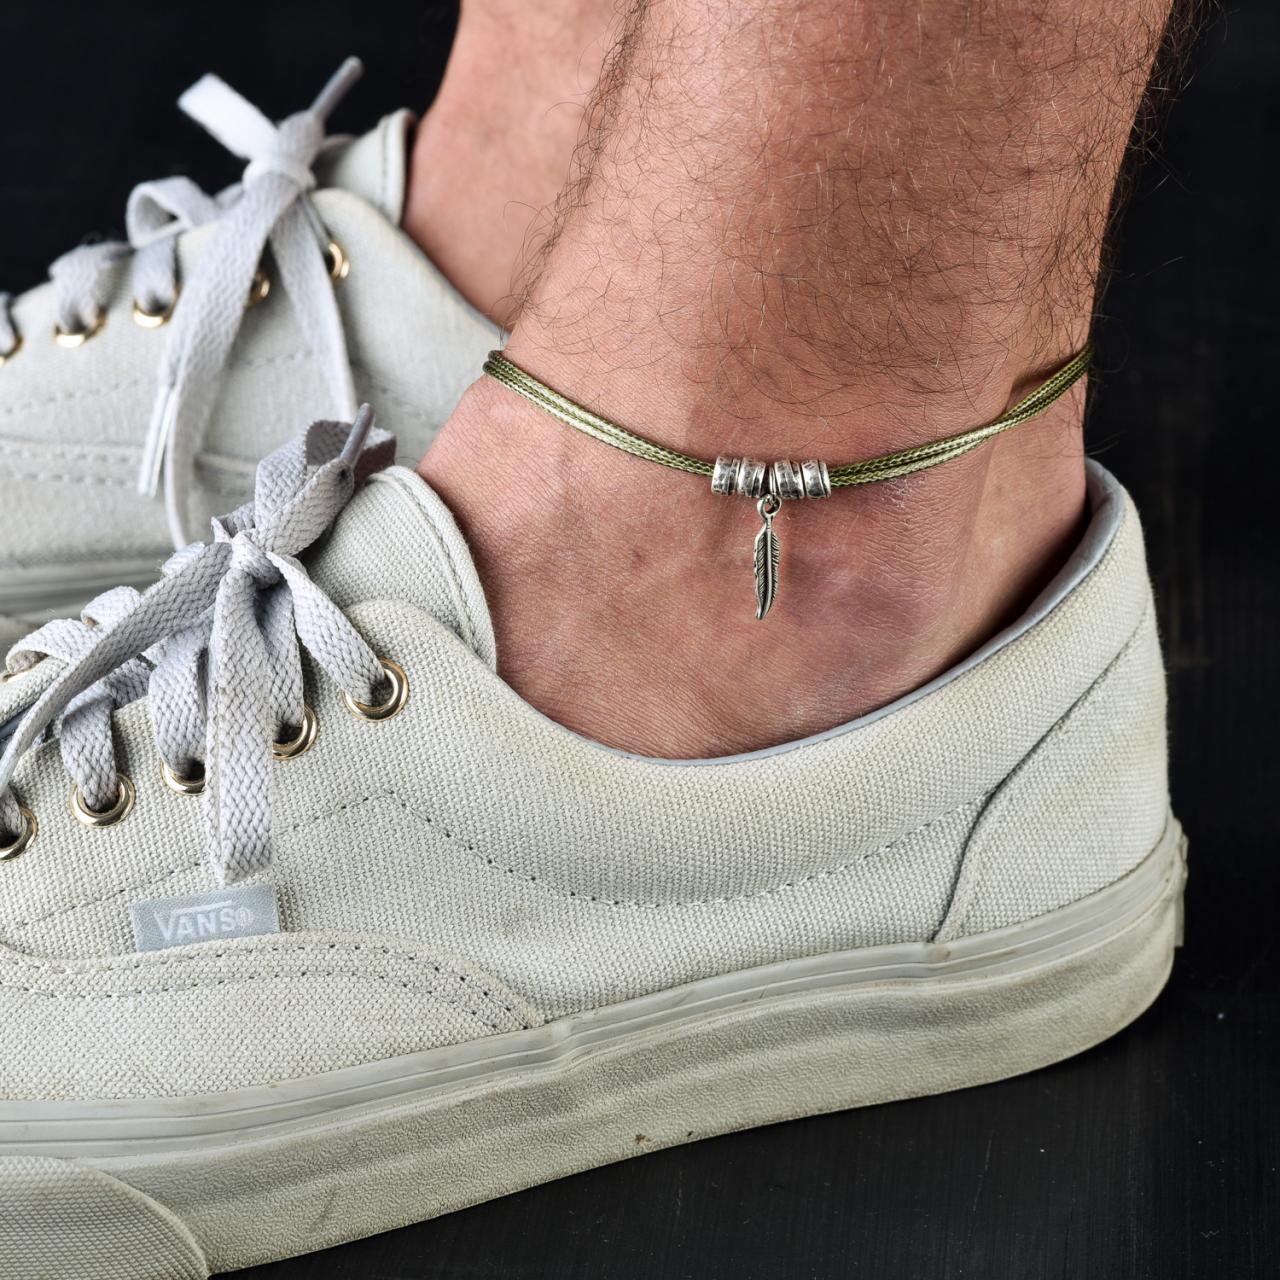 Men's Anklet - Men's Ankle Bracelet - Anklet For Men - Ankle Bracelet For Men - Men's Jewelry - Men's Gift -